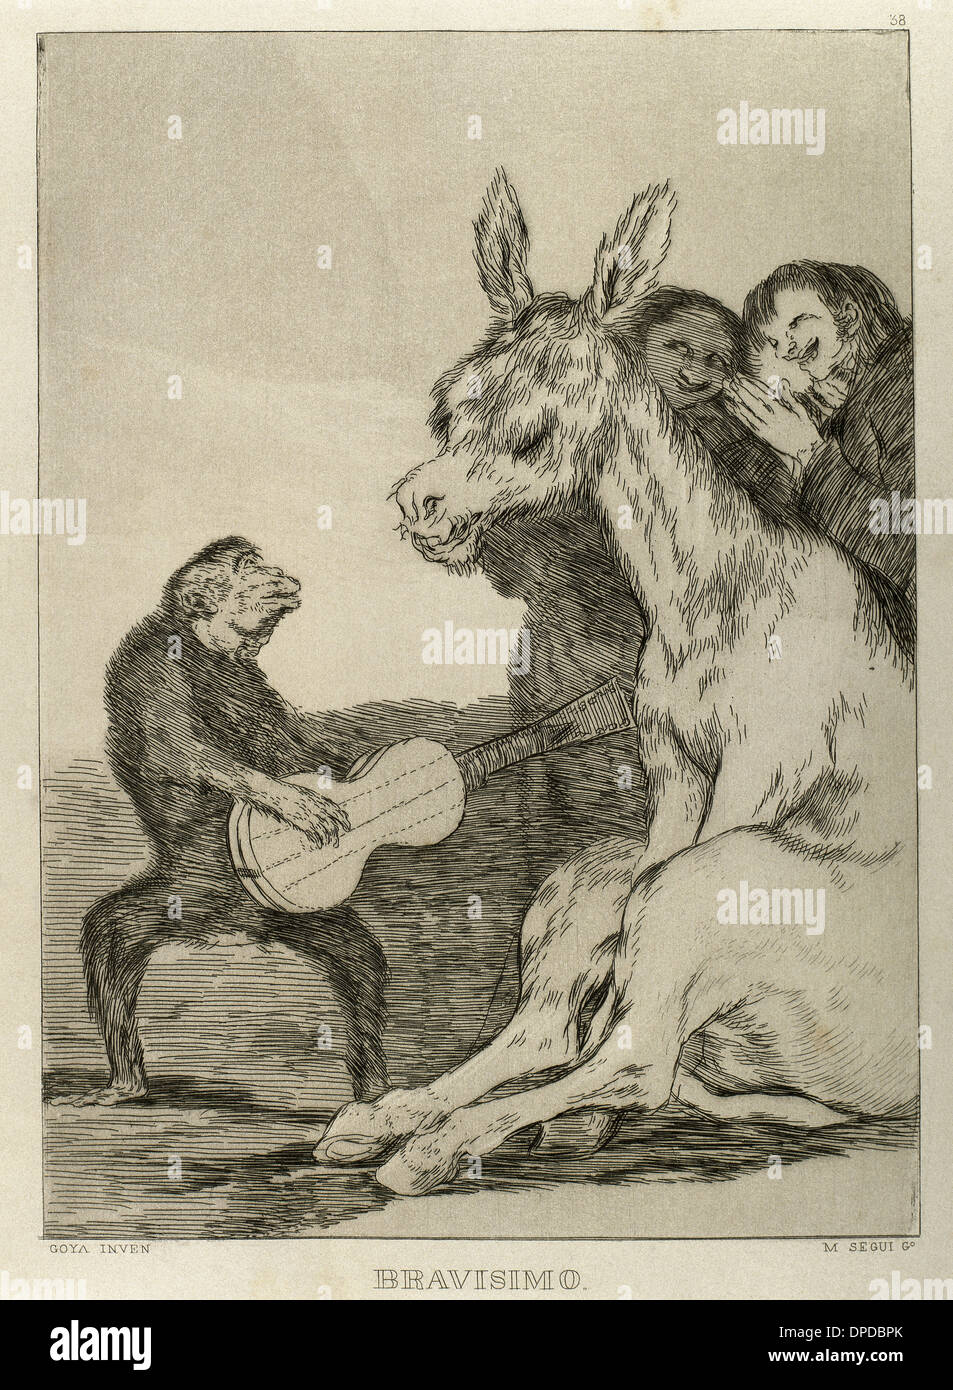 Goya (1746-1828). Spanischer Maler und Grafiker. Los Caprichos. ¡Bravisimo! Nummer 38. Aquatinta. Stockfoto